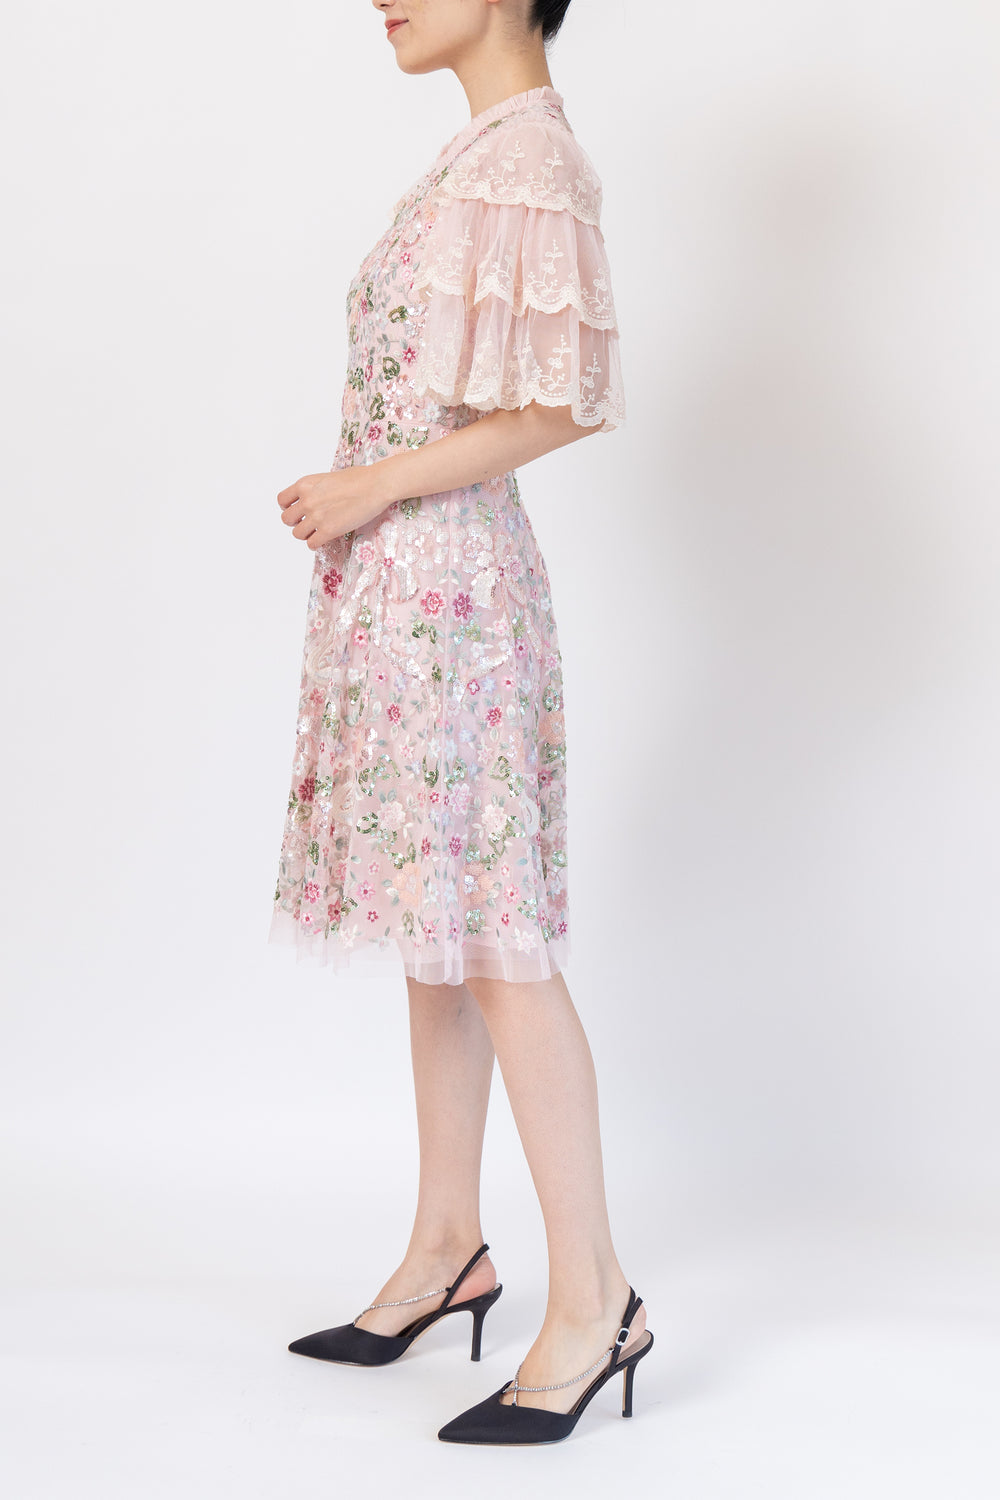 スパンコール リボン スワン 草花刺繍 レース装飾 ドレス